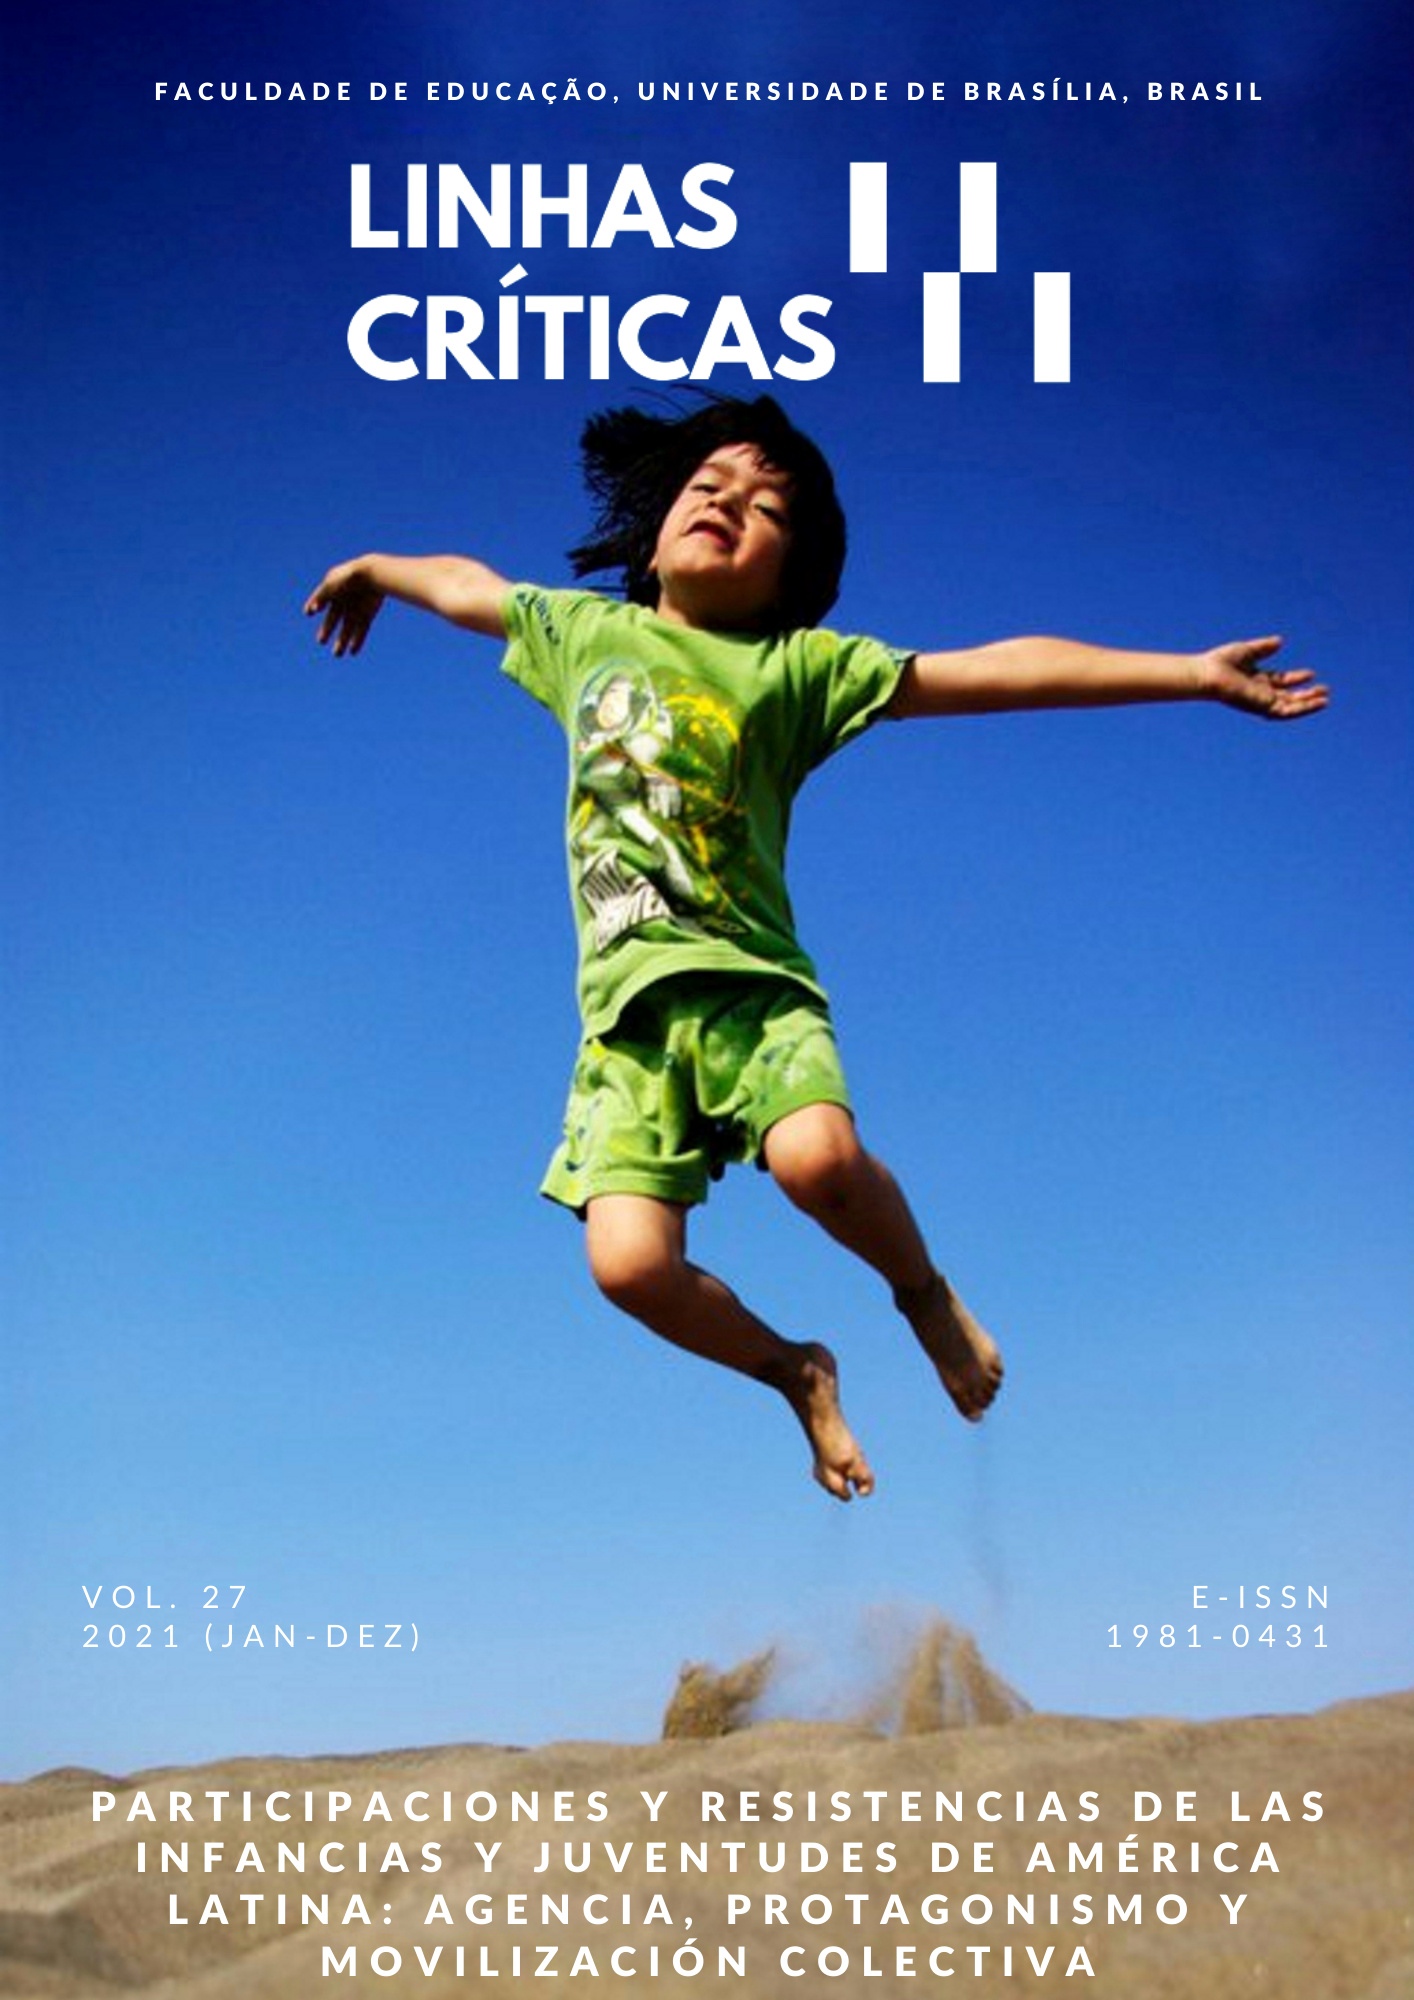 					Visualizar v. 27 (2021): Revista Linhas Críticas v. 27 (jan-dez)
				